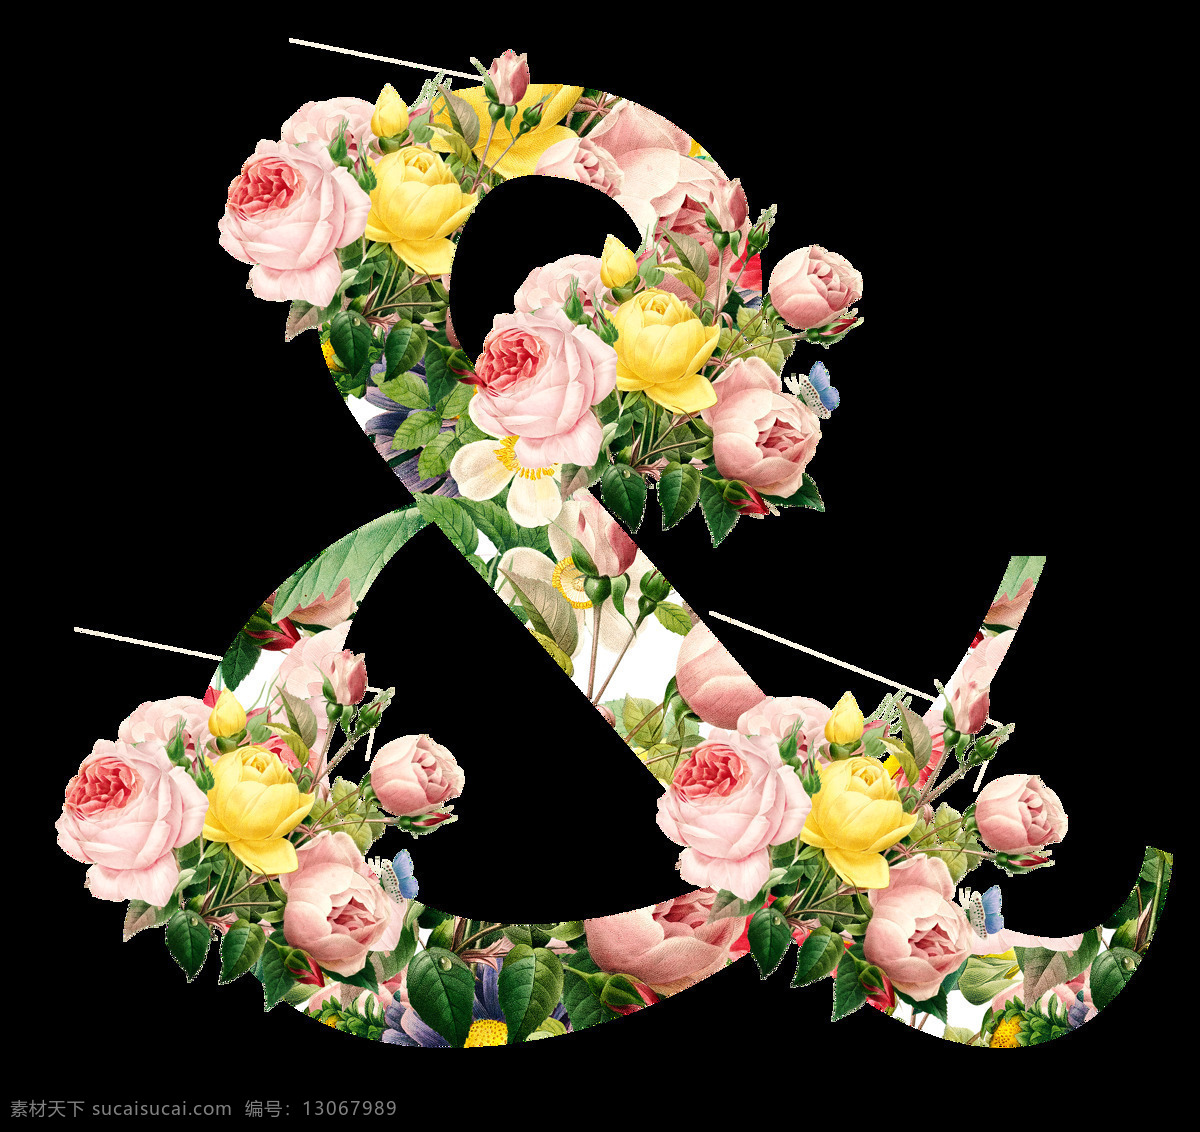 创意符号 amp 符号设计 花卉符号 创意设计 花卉风格 复古风格 设计素材 婚礼素材 立体符号 矢量符号 卡通符号 创意立体符号 3d符号 手绘符号 艺术符号 英文字体 英文艺术字 拼音字母 英文字母 创意英文字母 艺术英文字母 逗号 句号 感叹号 问号 标点符号